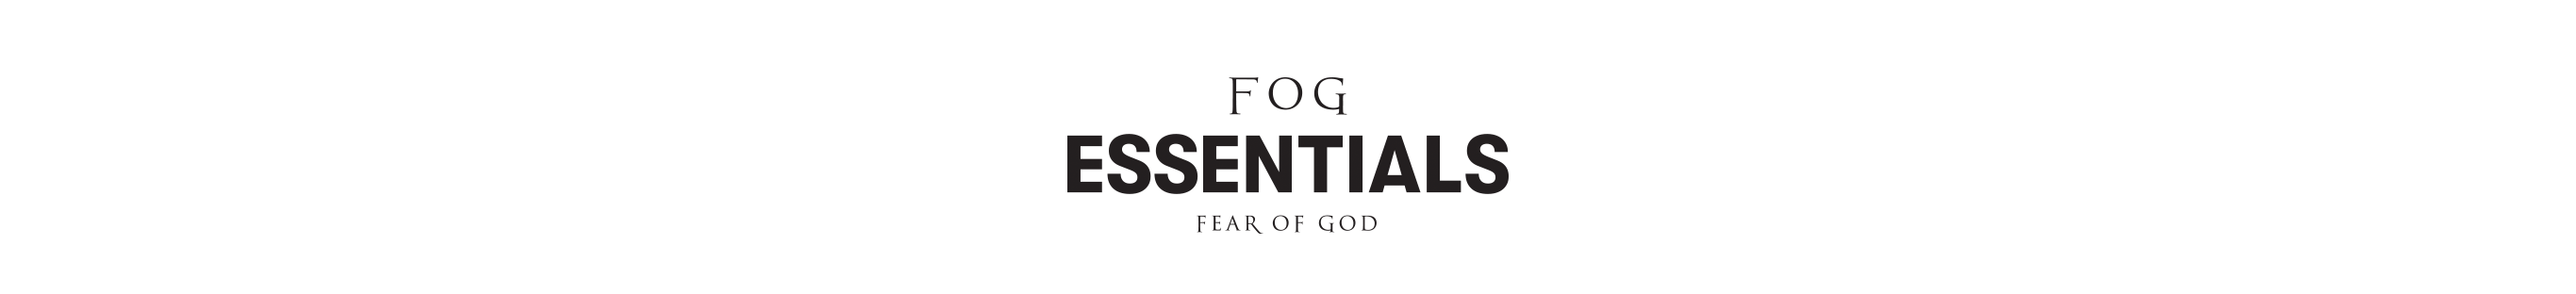 FOG - Fear of God at PacSun.com